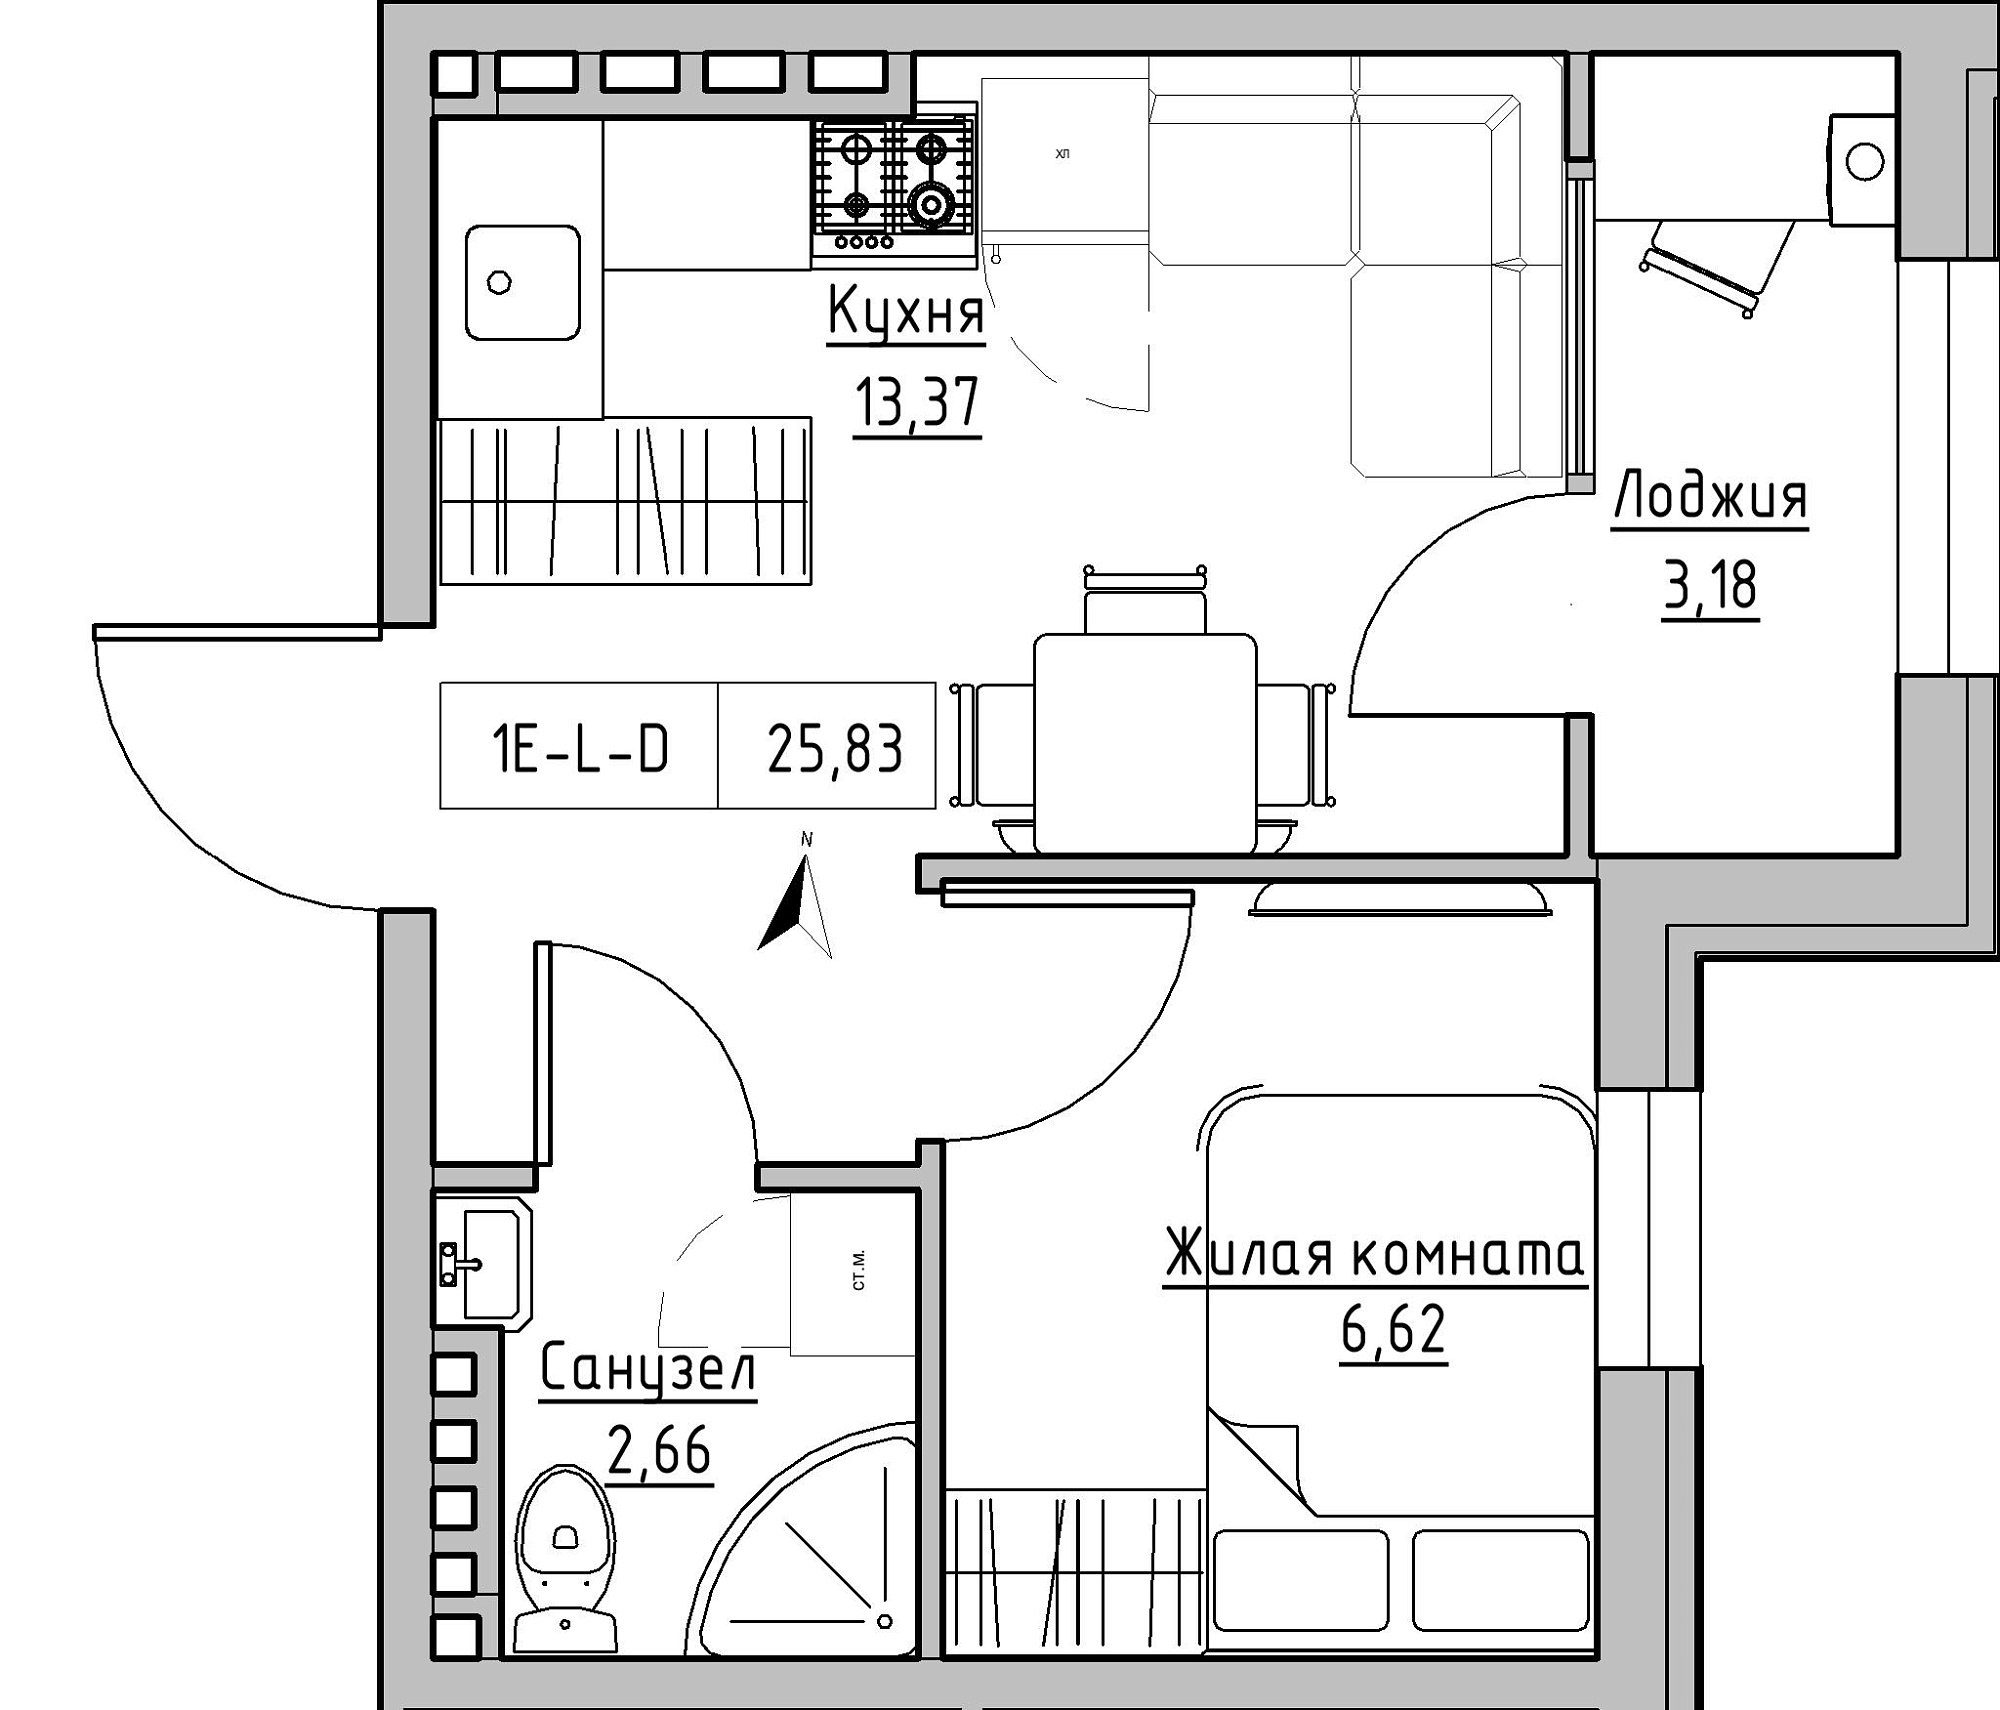 Планування 1-к квартира площею 25.83м2, KS-024-04/0017.